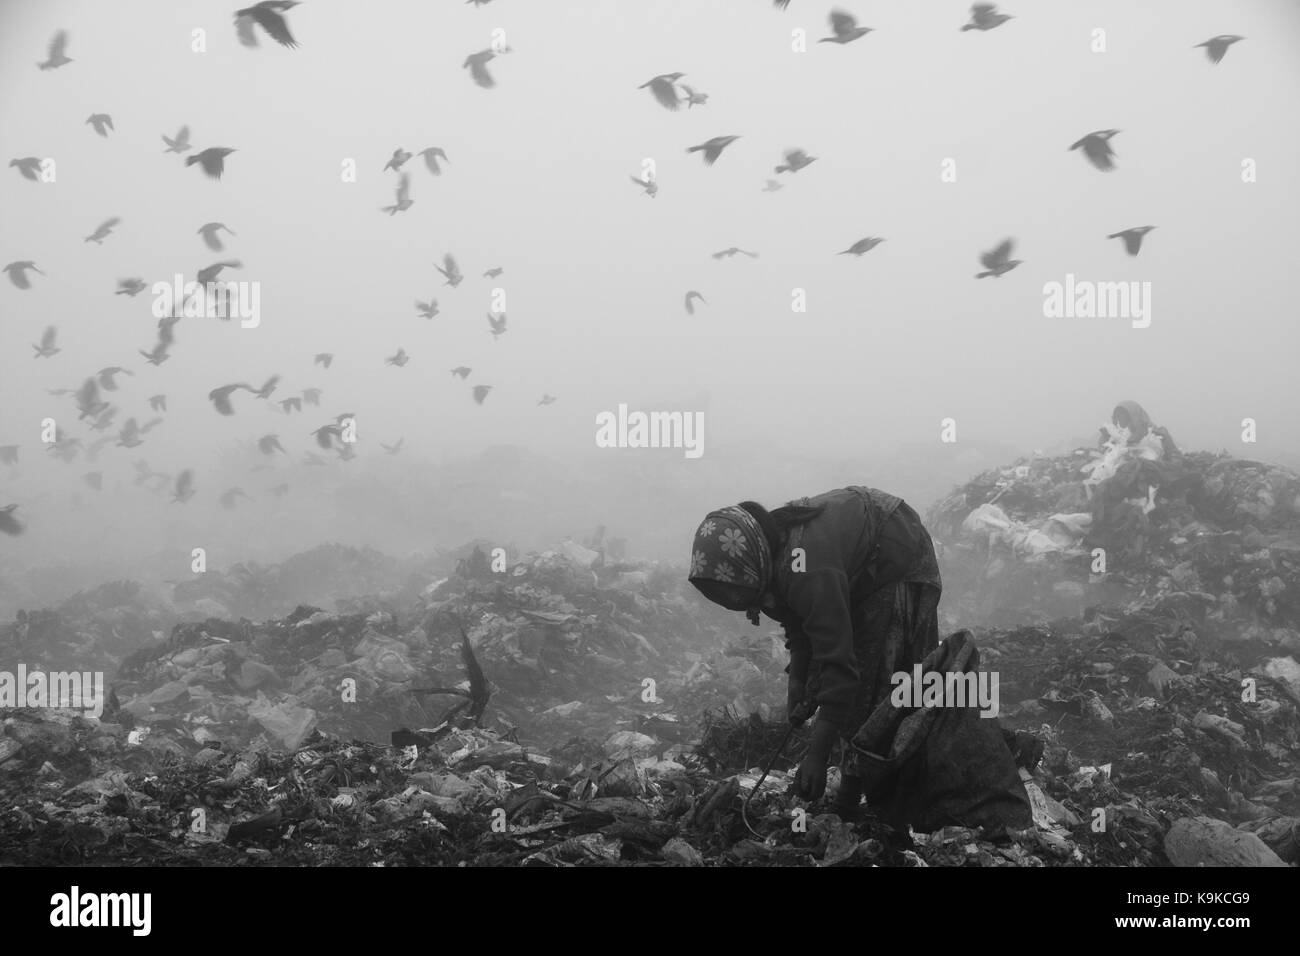 La vita in una terra desolata di nomadi che vivono raccogliendo rifiuti riciclabili materiali come plastica, vetri rotti, carte, ecc. Foto Stock